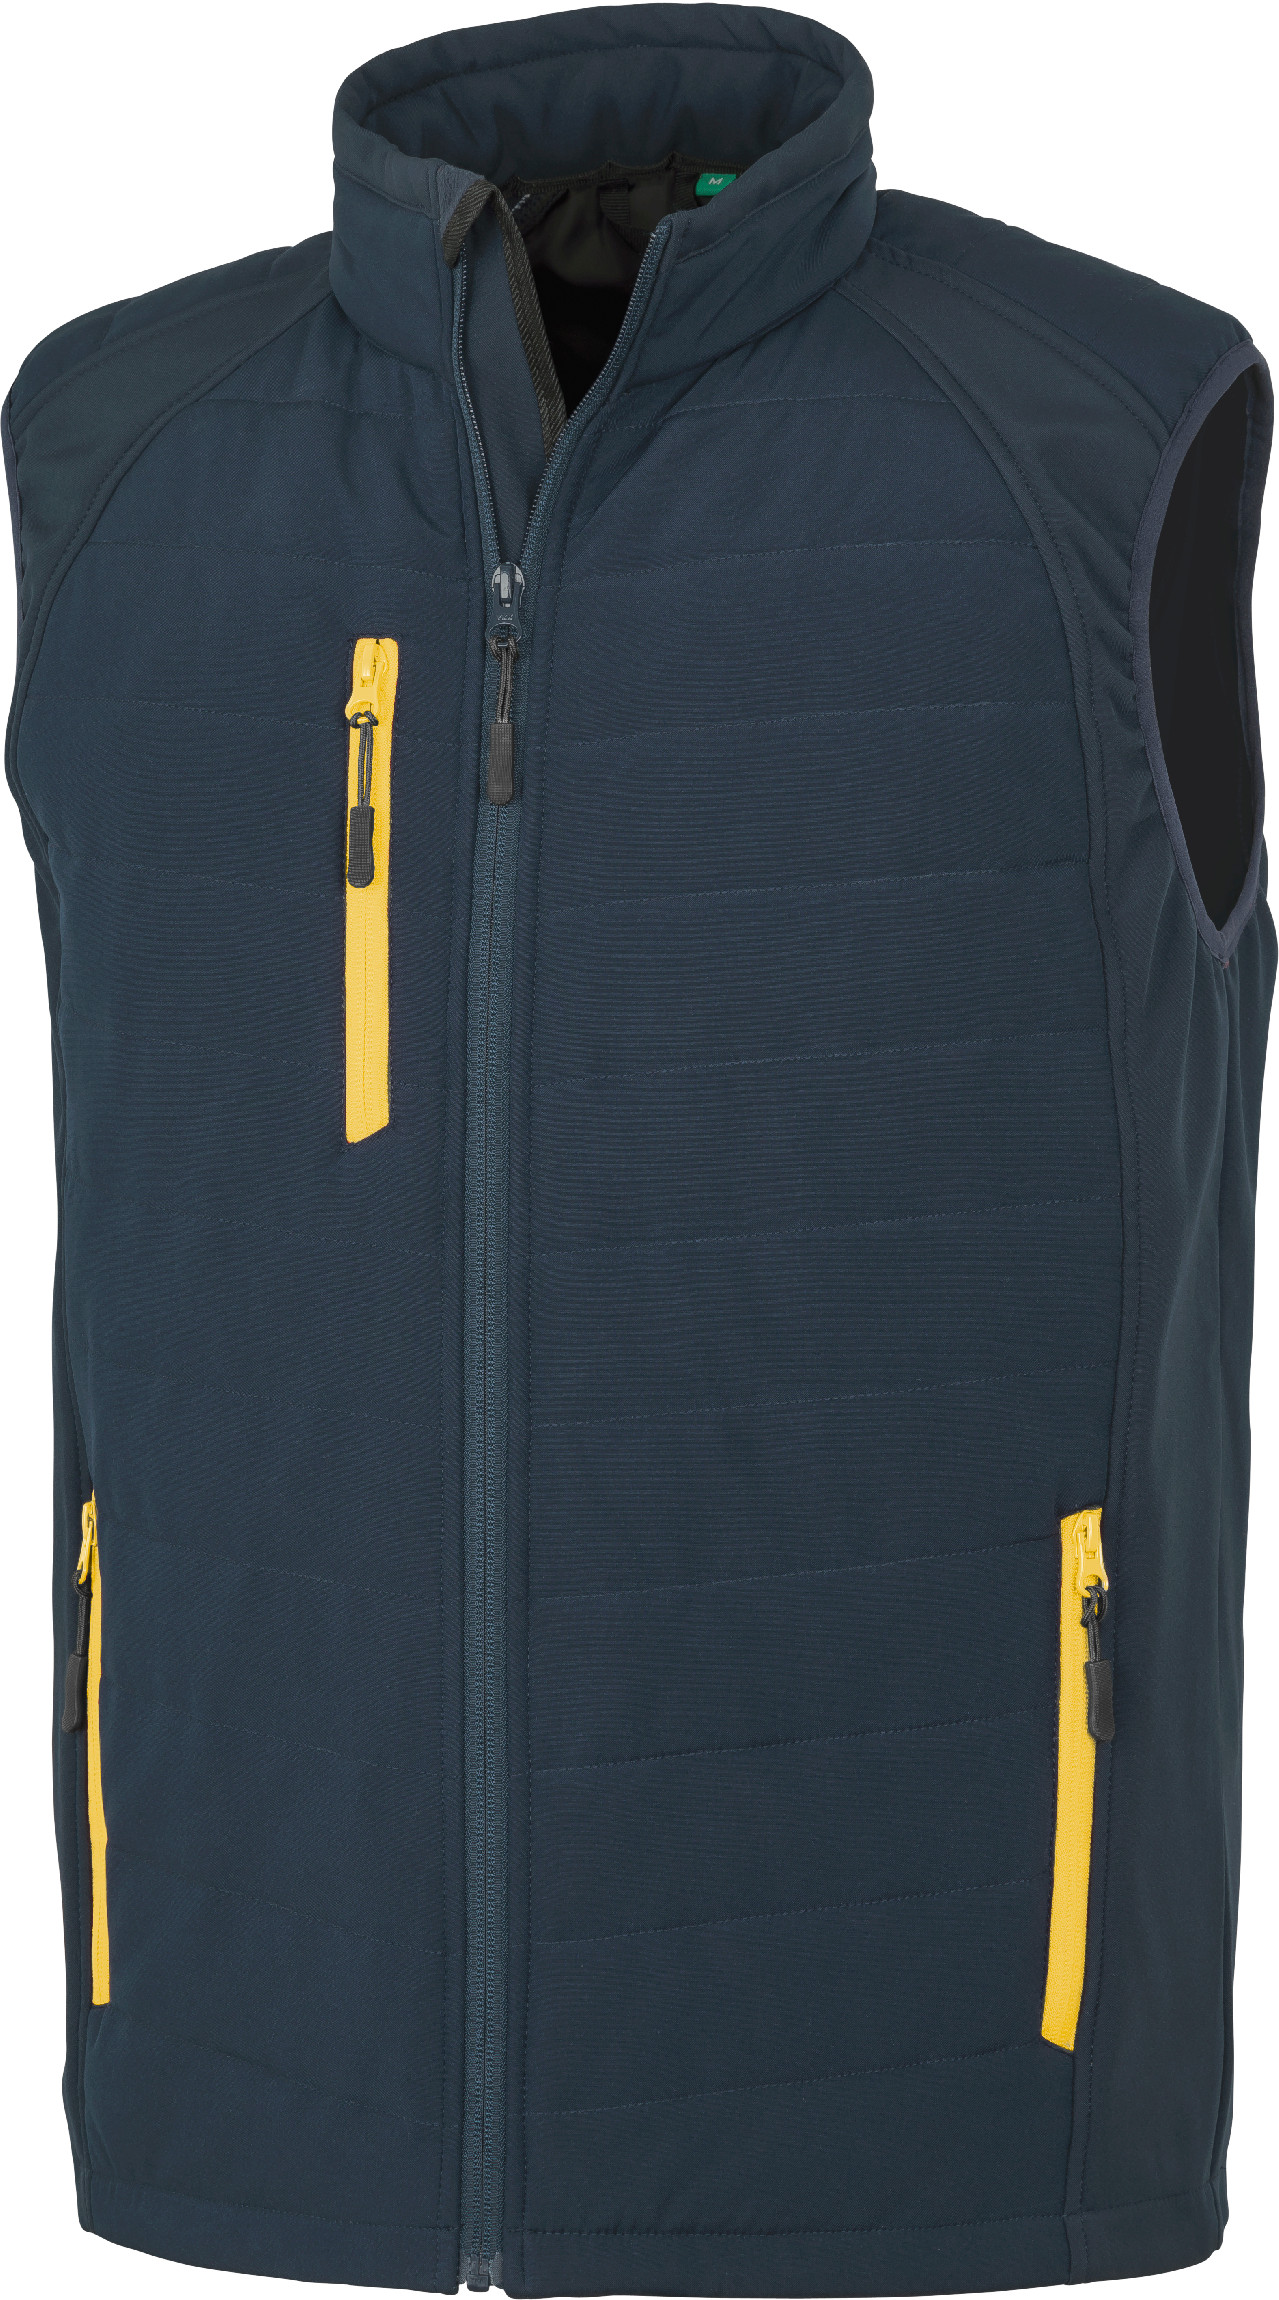 Polstrovaná softshell vesta Compass R238X Barva: námořní modrá-žlutá, Velikost: L